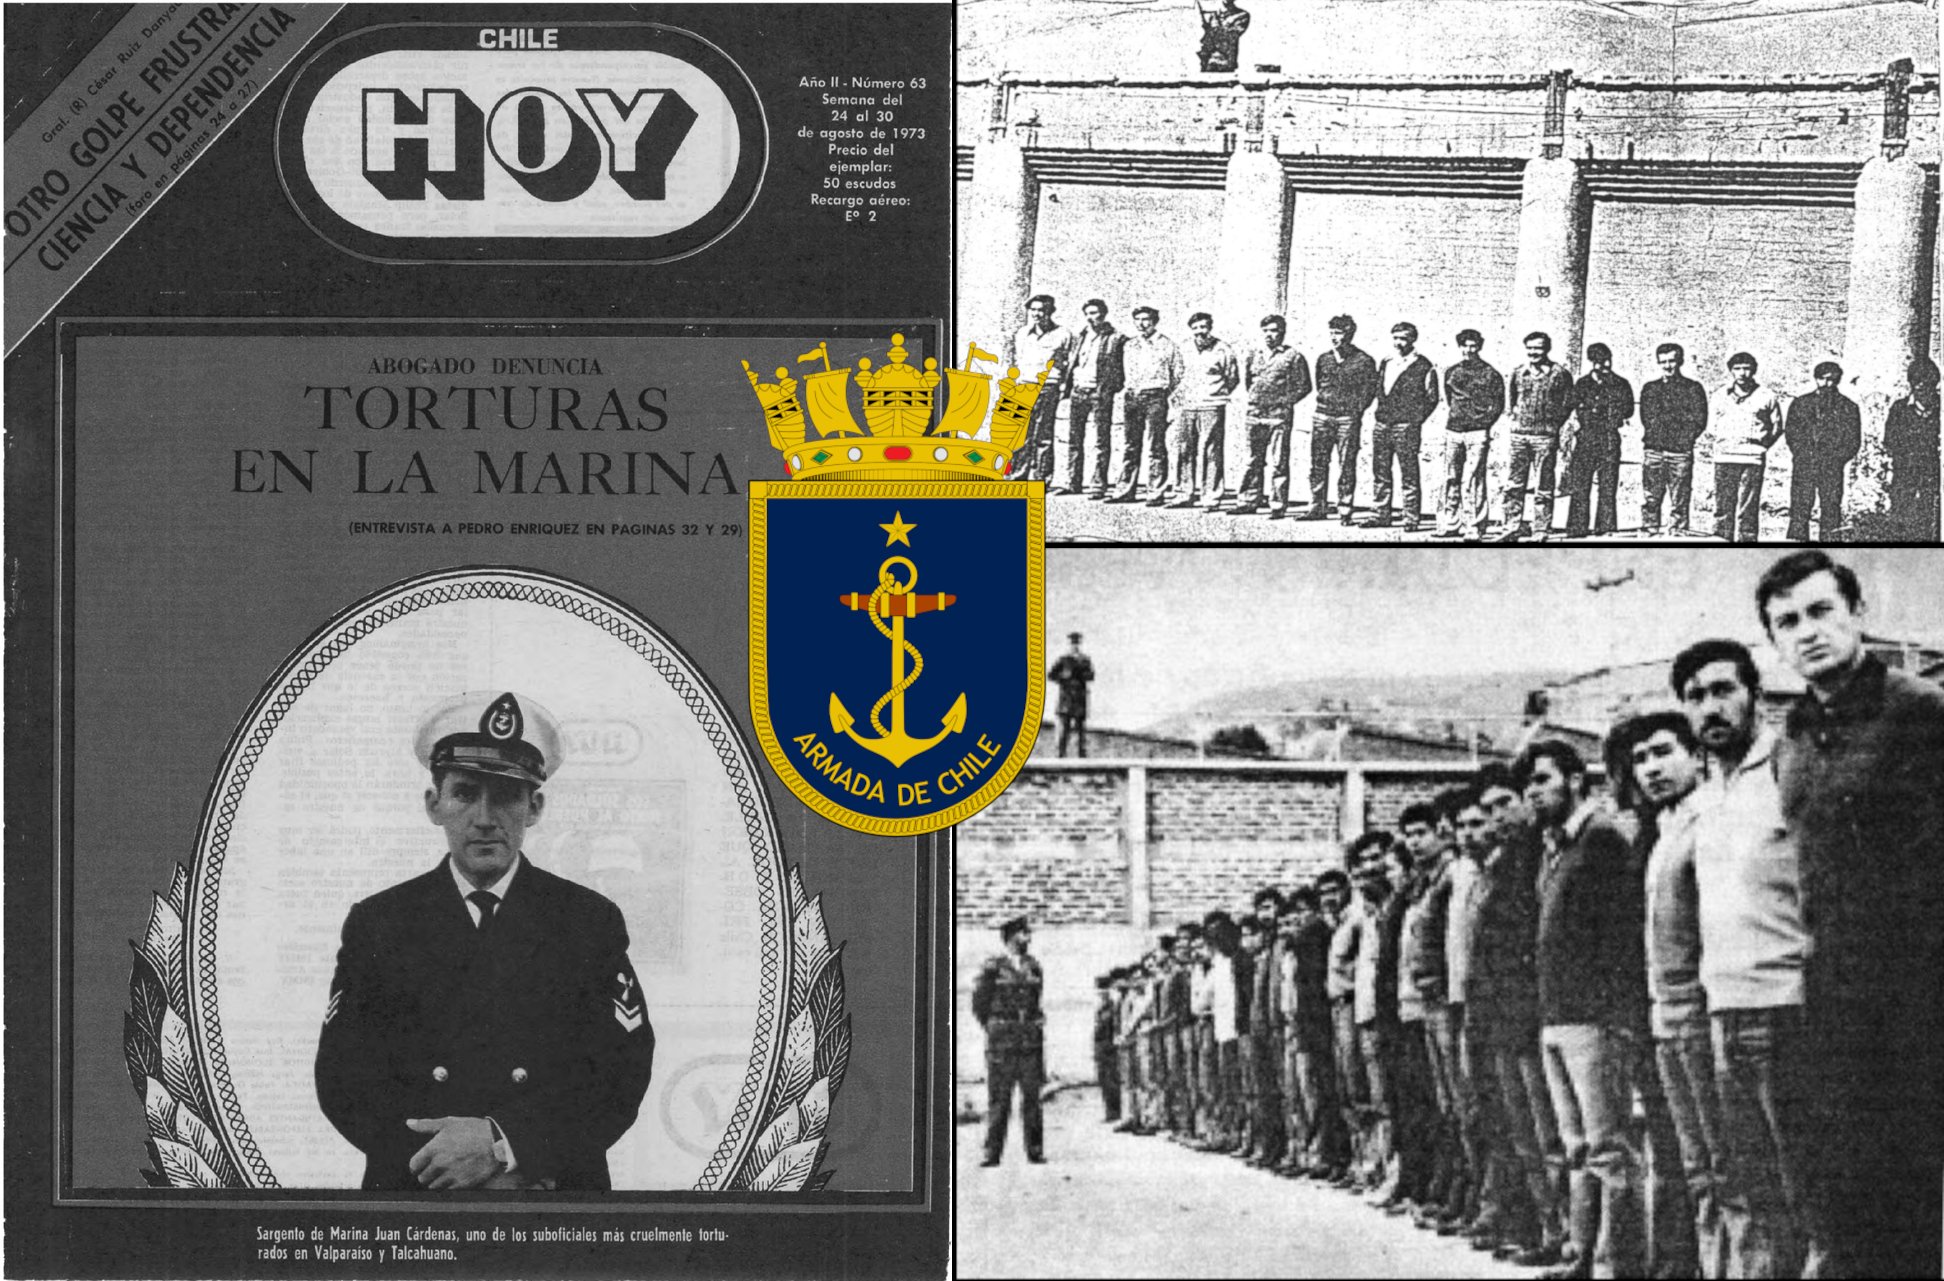 La preparación del Golpe de Estado en la Armada: Así lo narró la Revista Chile HOY en agosto de 1973